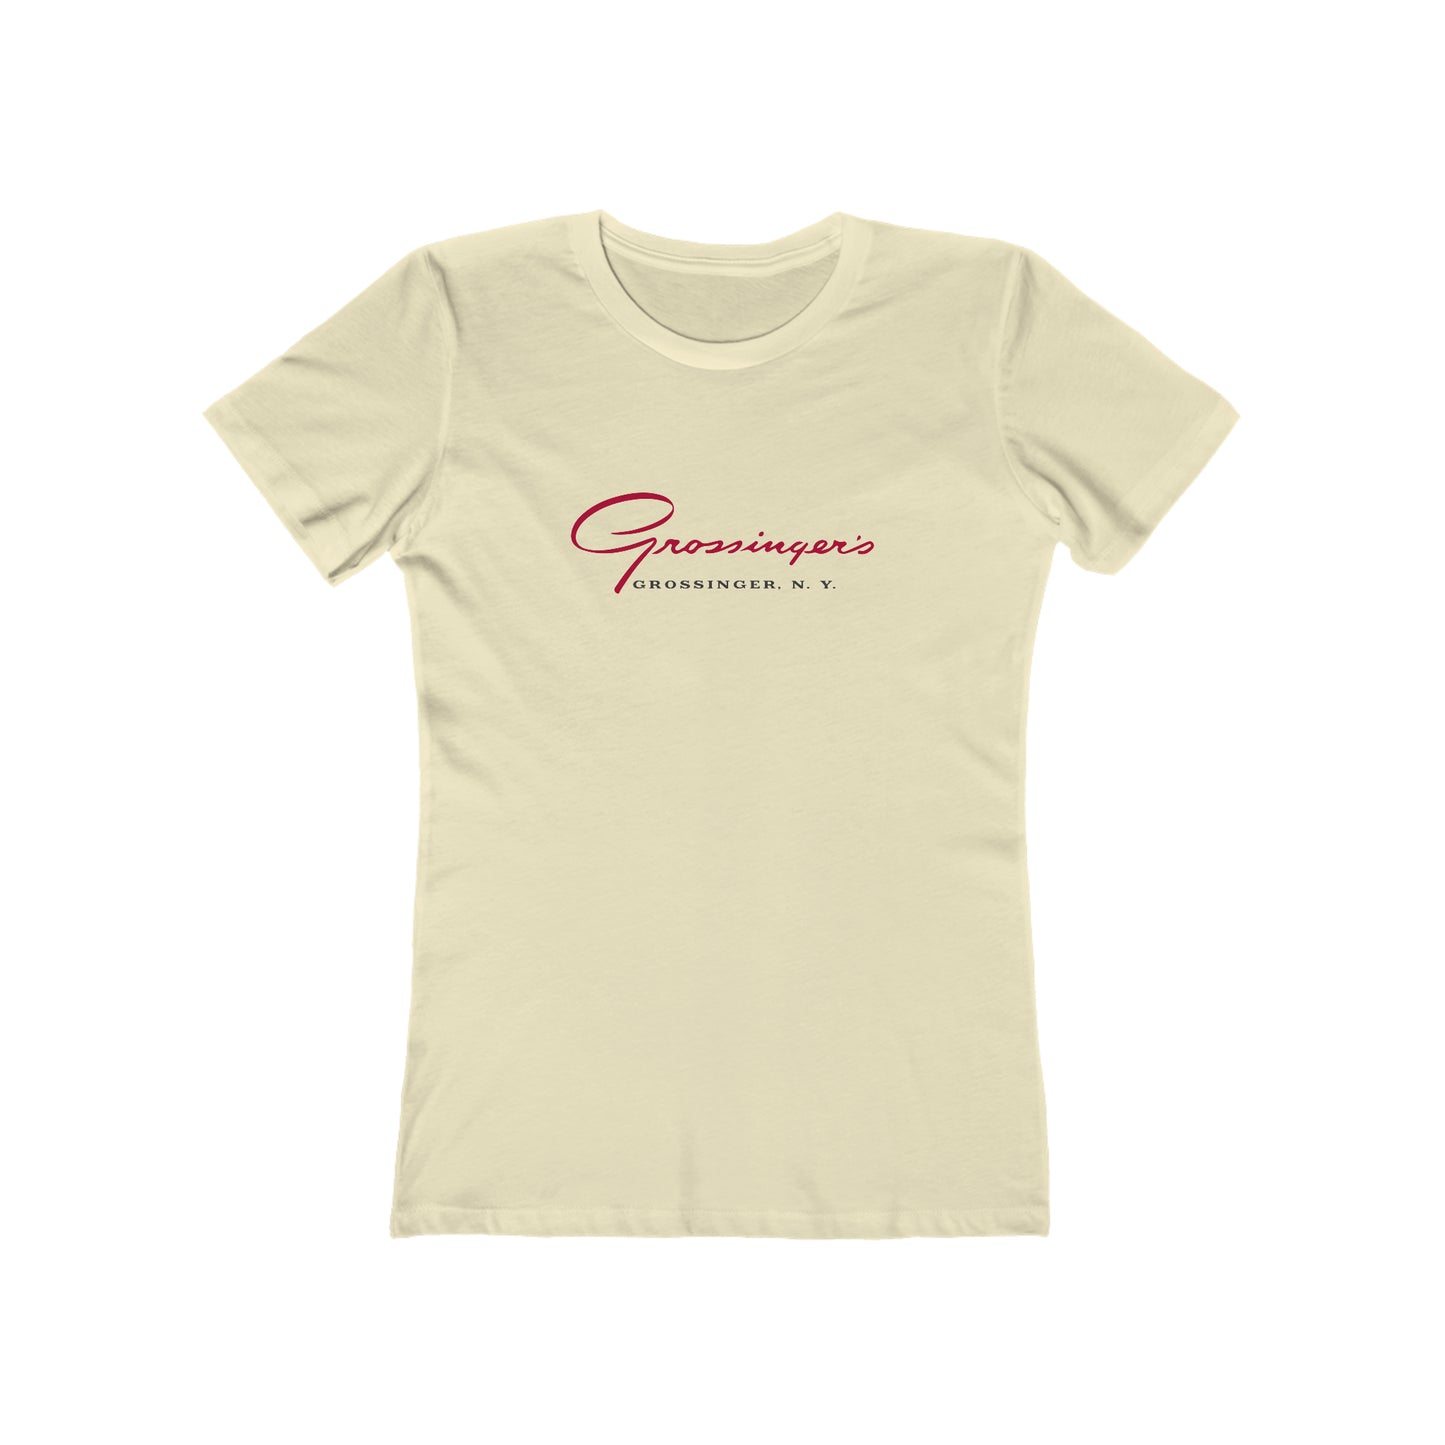 Grossinger's - Women's T-Shirt